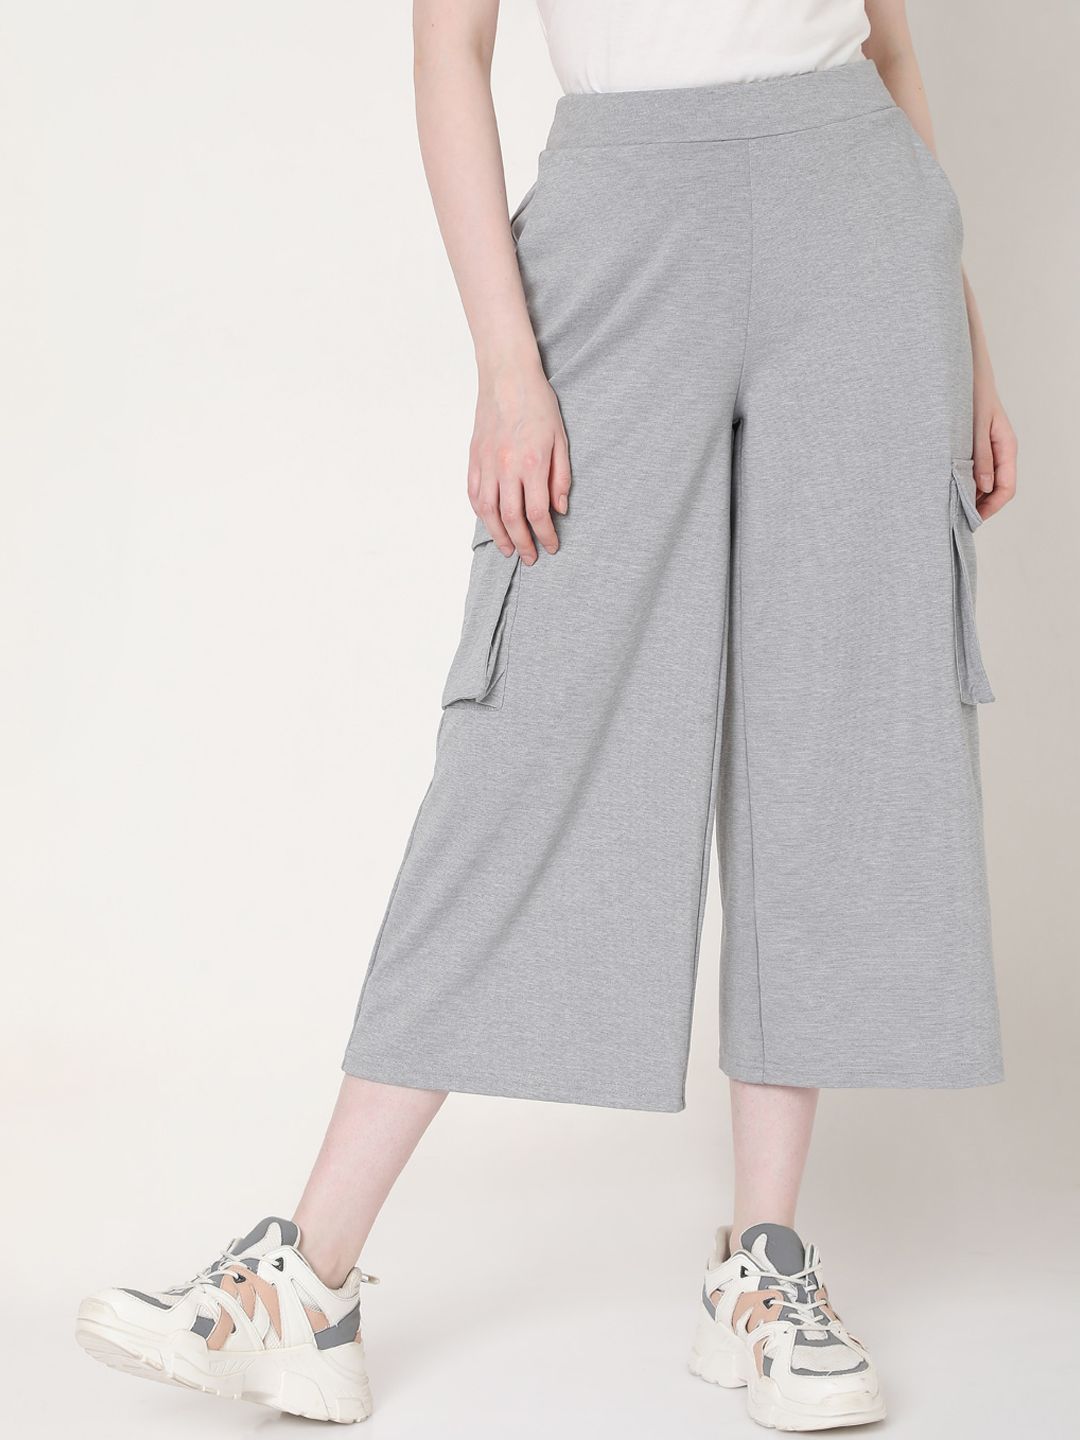 Vero Moda Women Grey Culottes Trousers Price in India